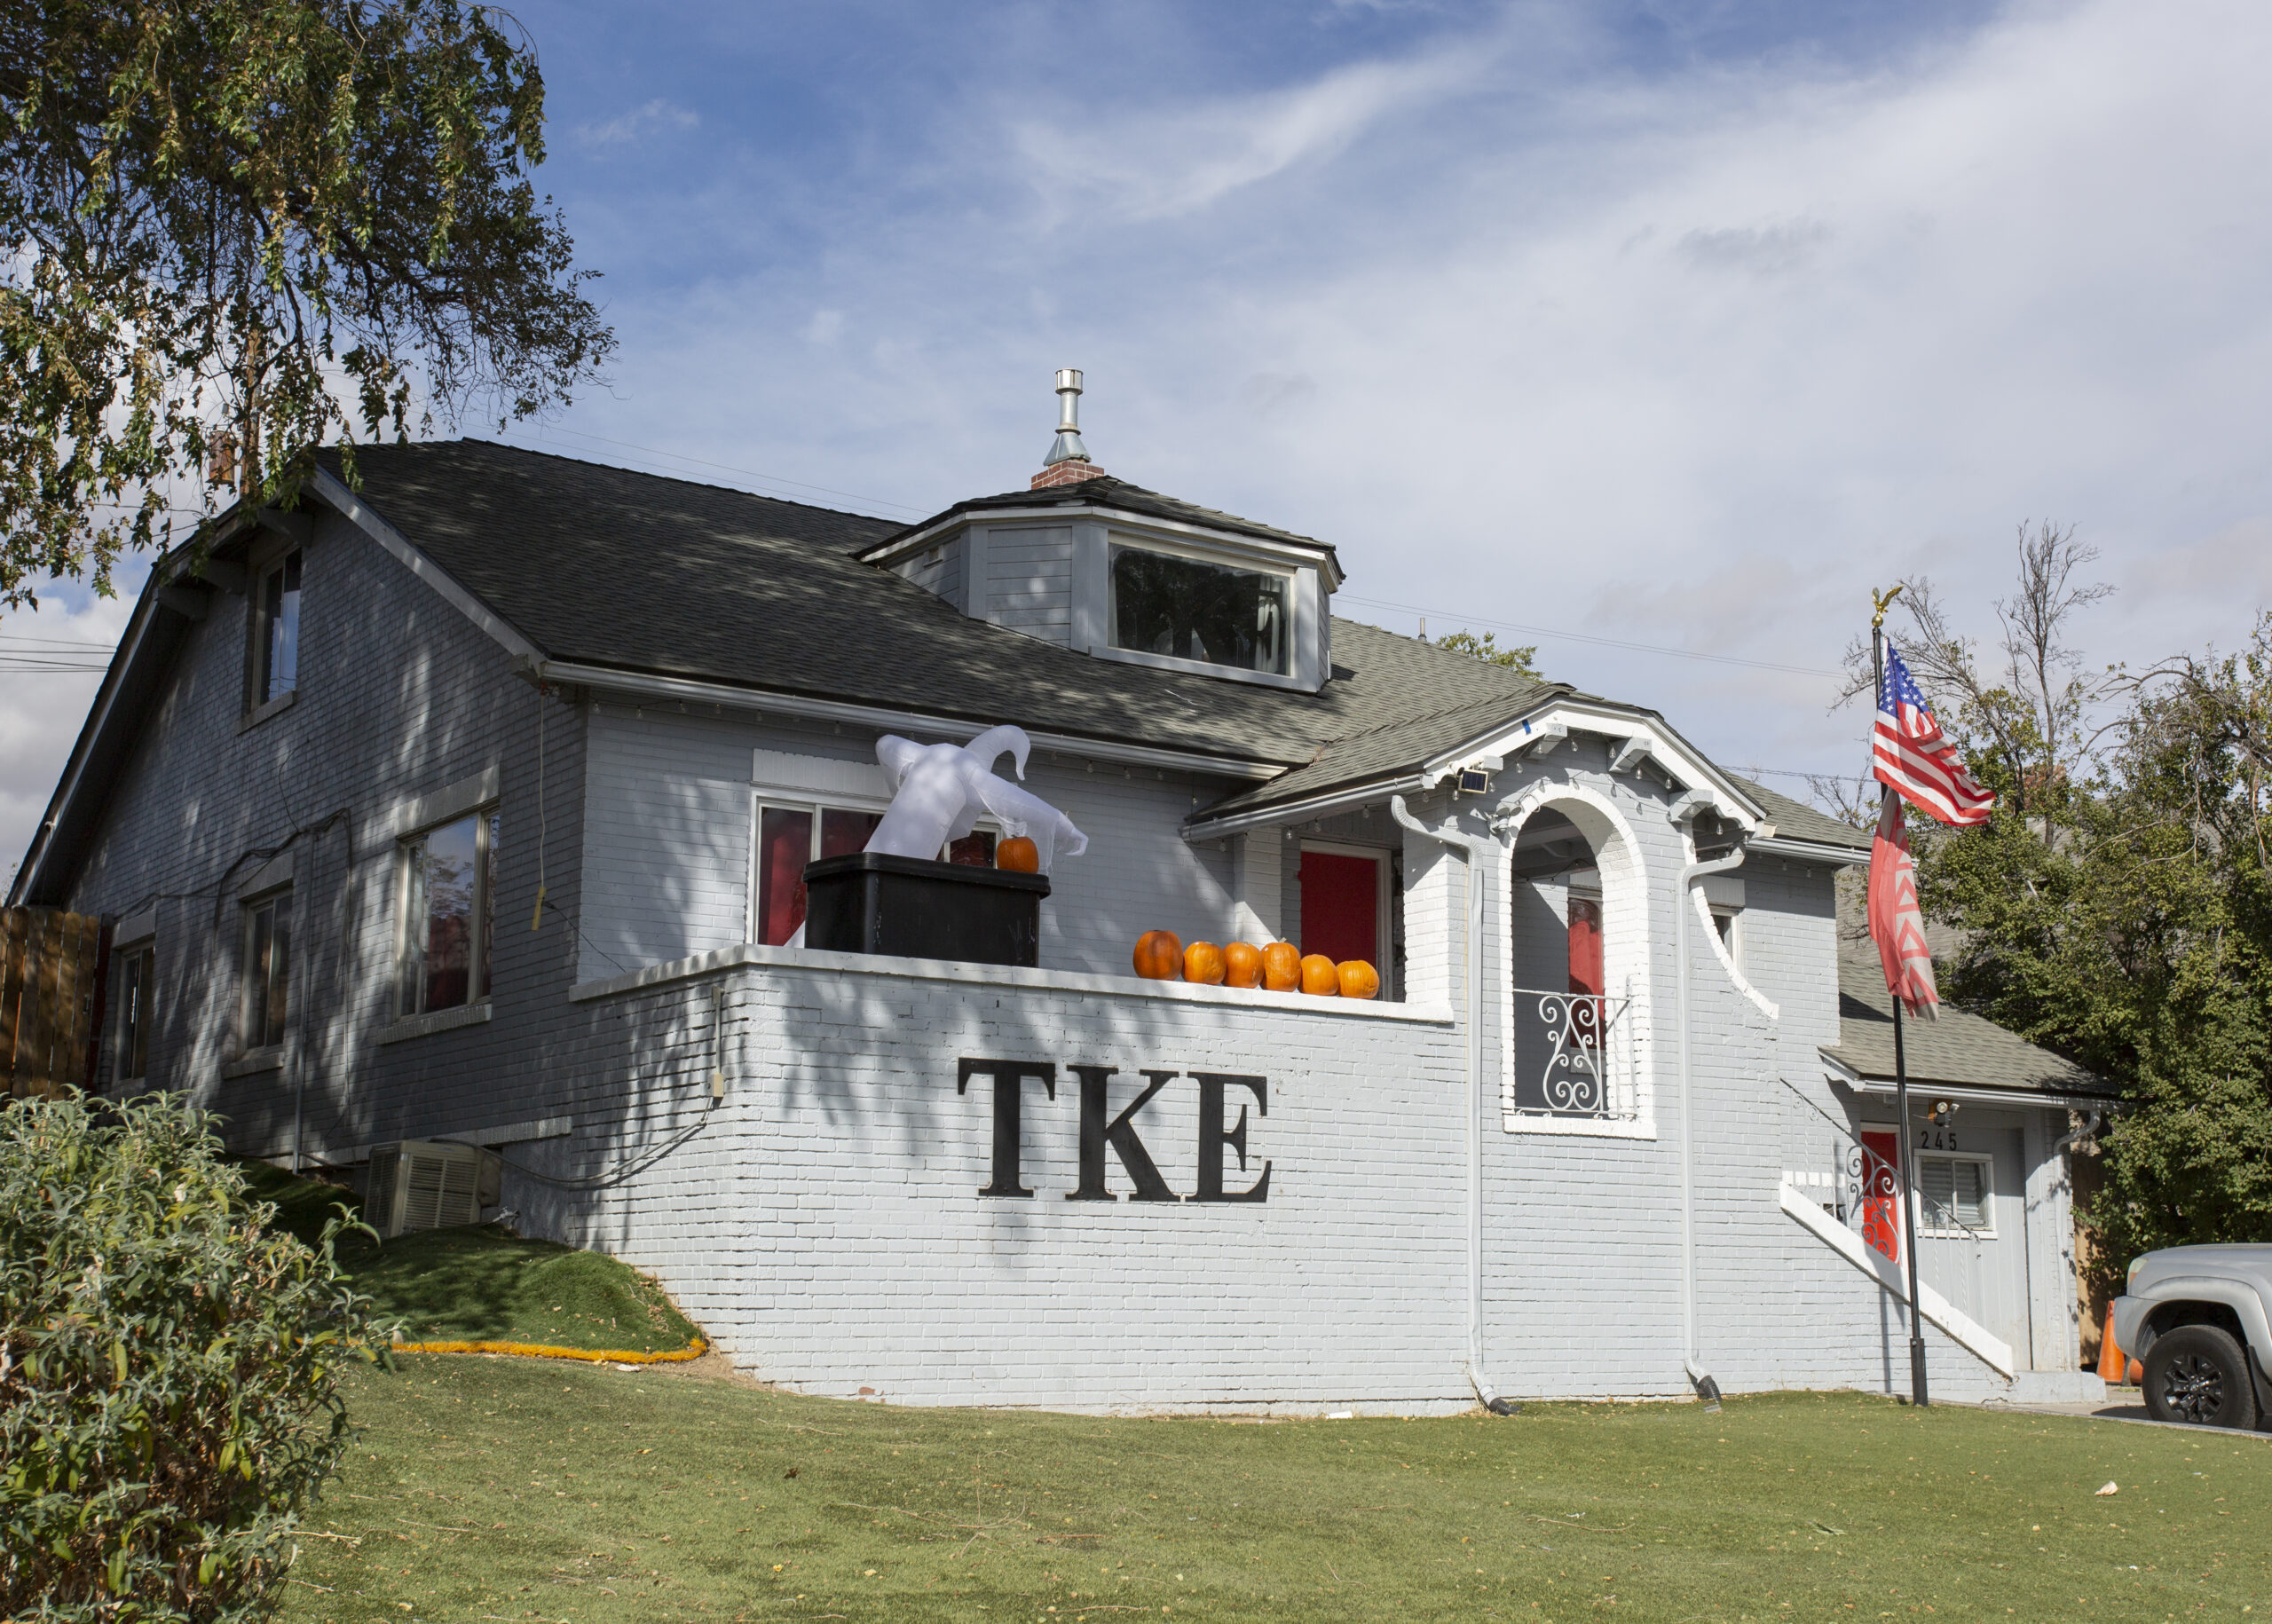 TKE pledge hospitalized due to hazing, fraternity under fire